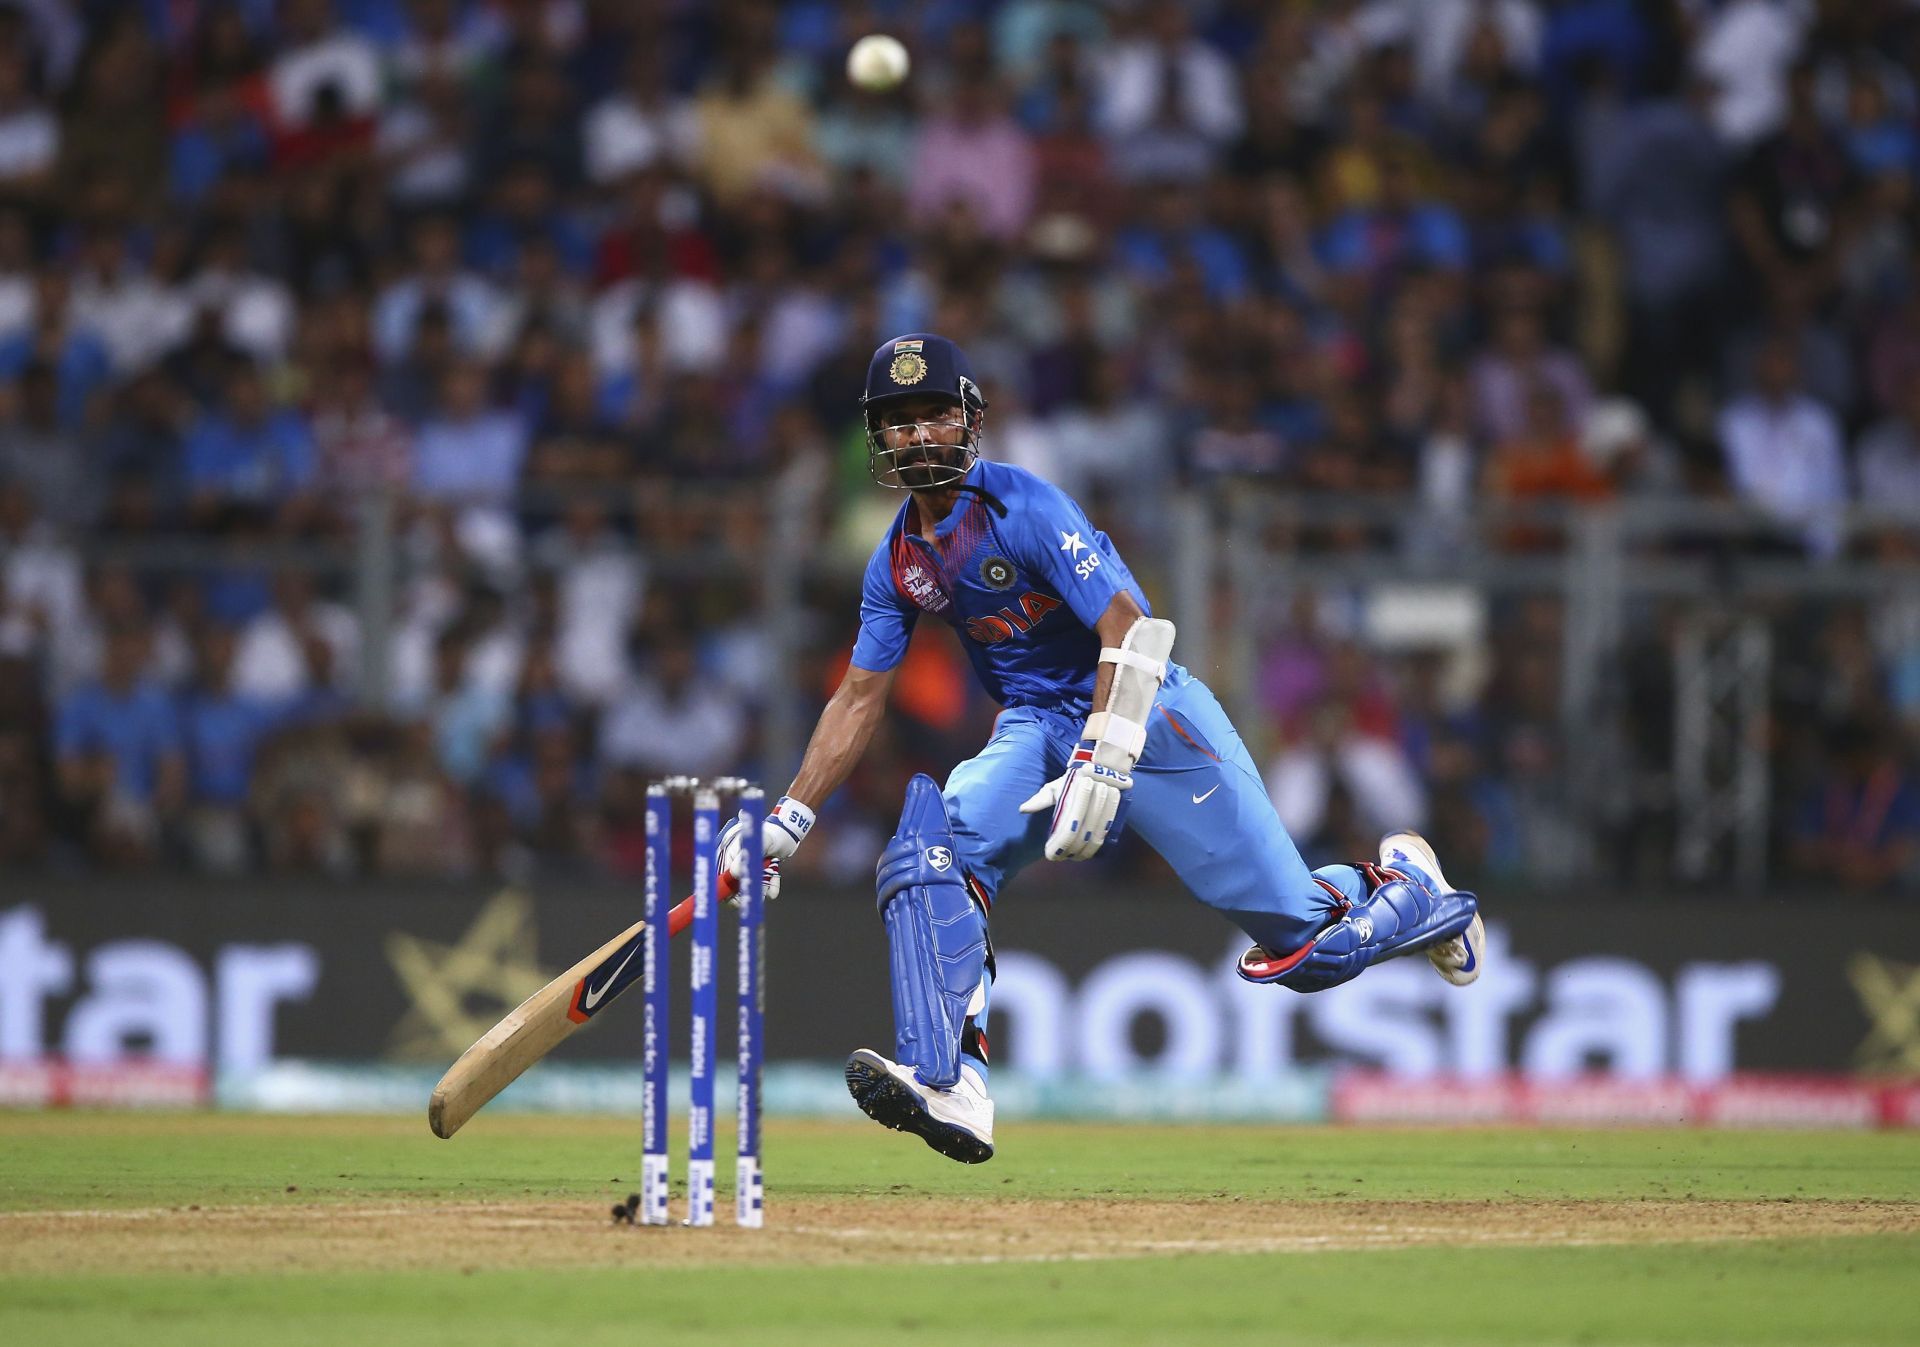 Ajinkya Rahane scored 40 runs for India in that game